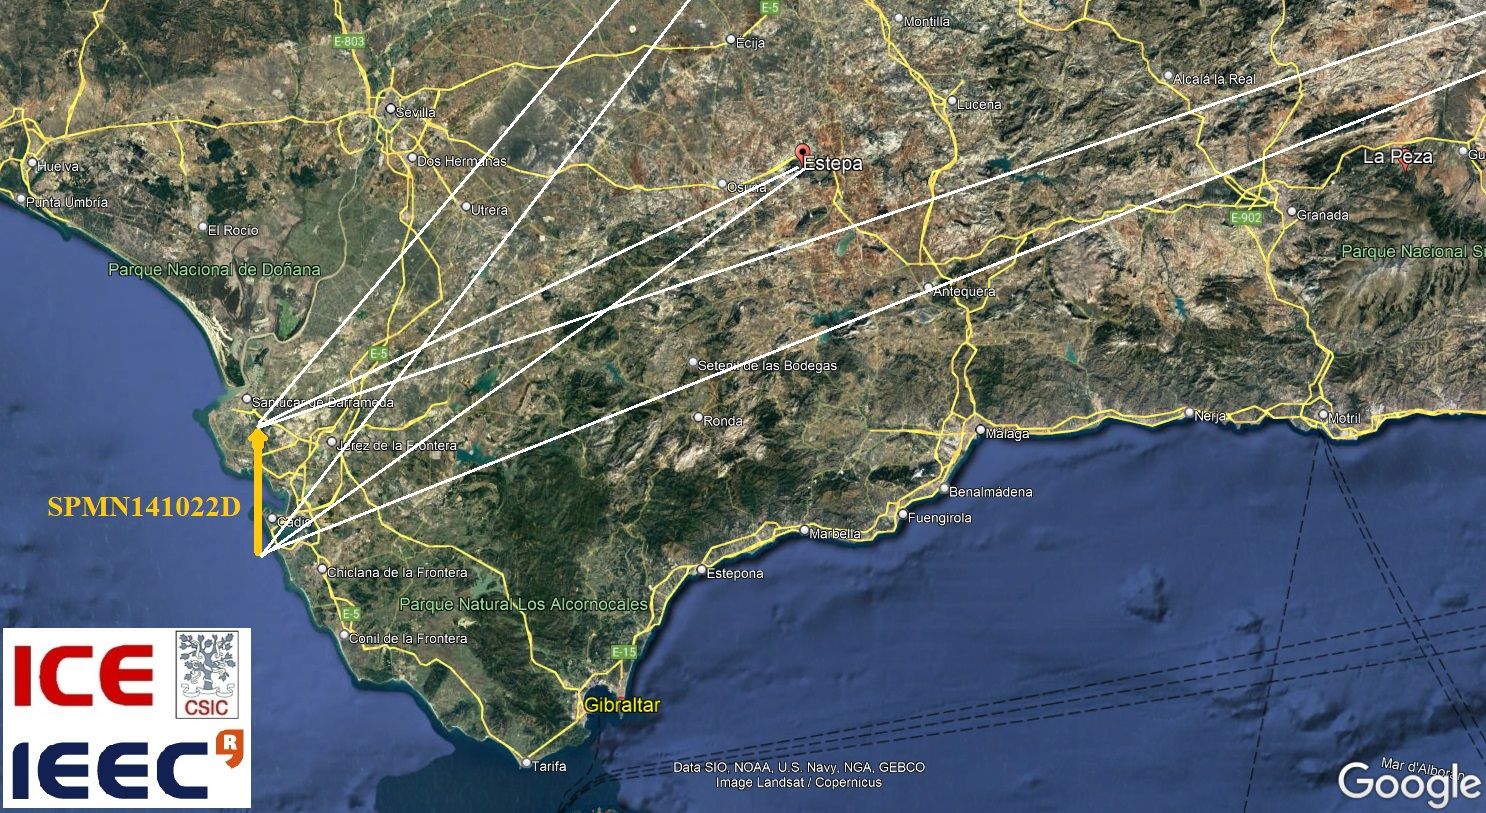 Mapa de la zona donde se produjo la caída de los restos del meteorito, entre Sanlúcar, Jerez y la Base de Rota. (SPMN) @RedSpmn